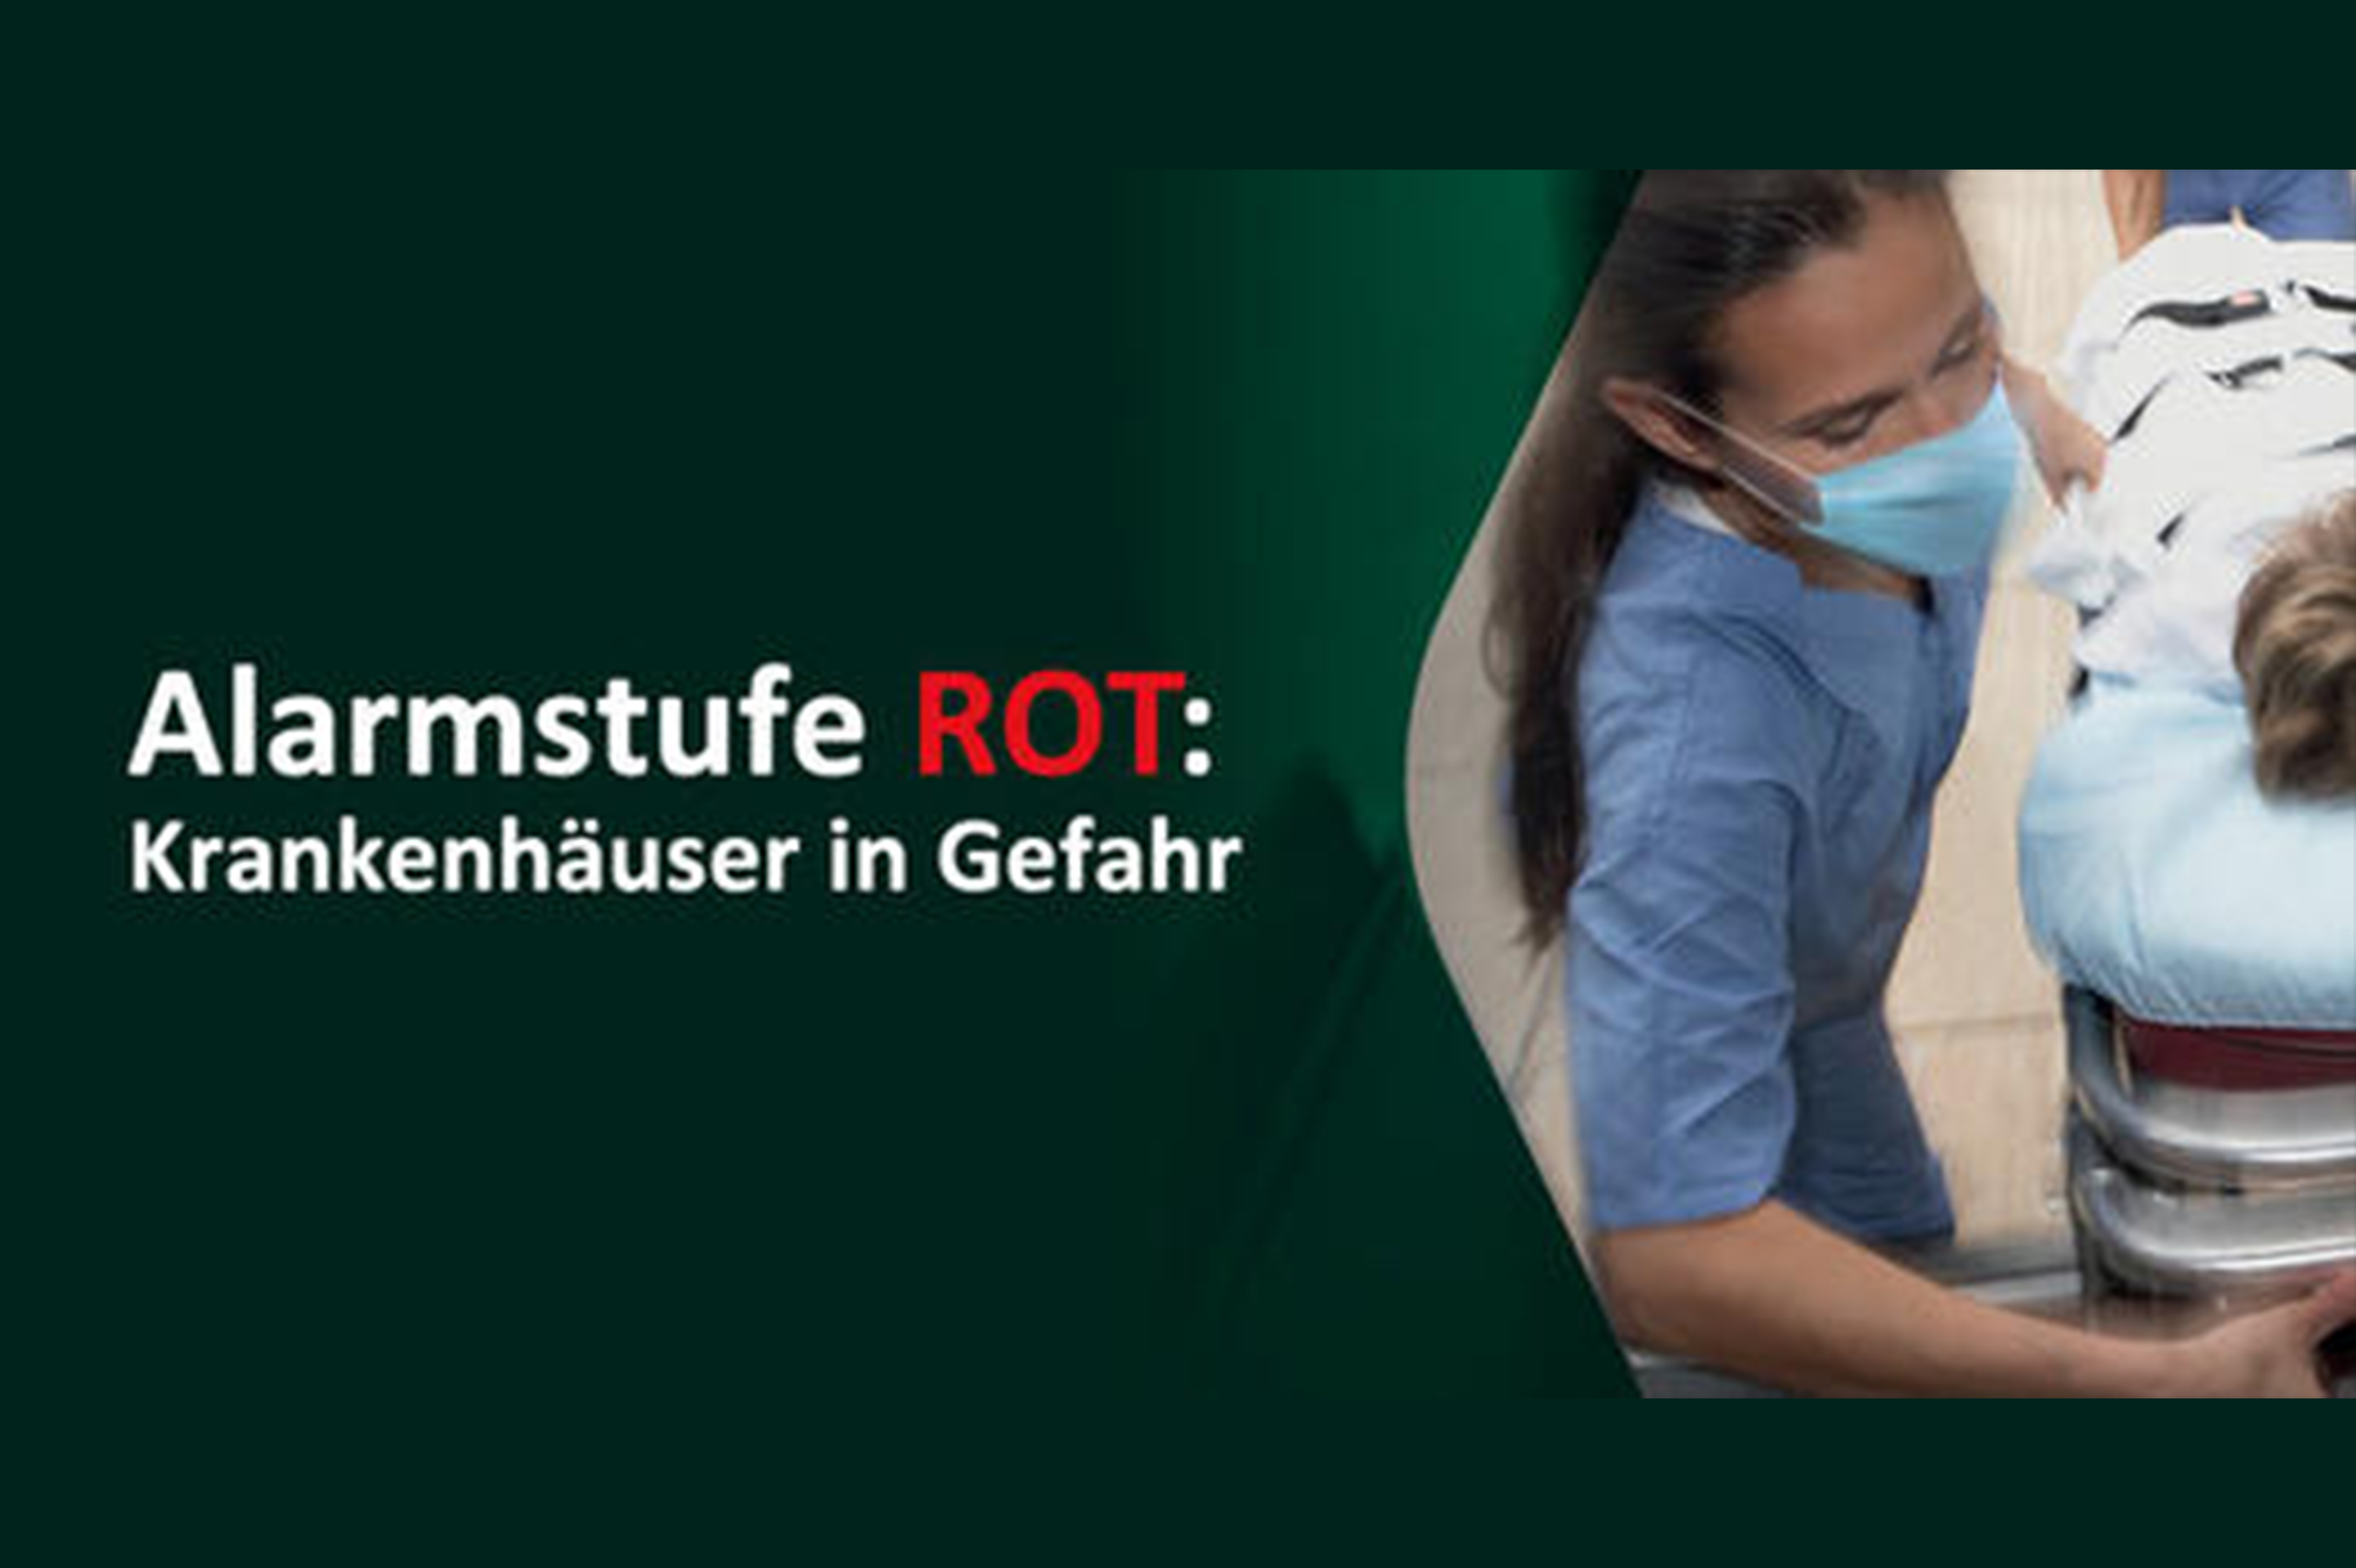 Alarmstufe ROT - Krankenhäuser in Gefahr // Fuldaer Kliniken beteiligten sich an Aktion der Krankenhausgesellschaft